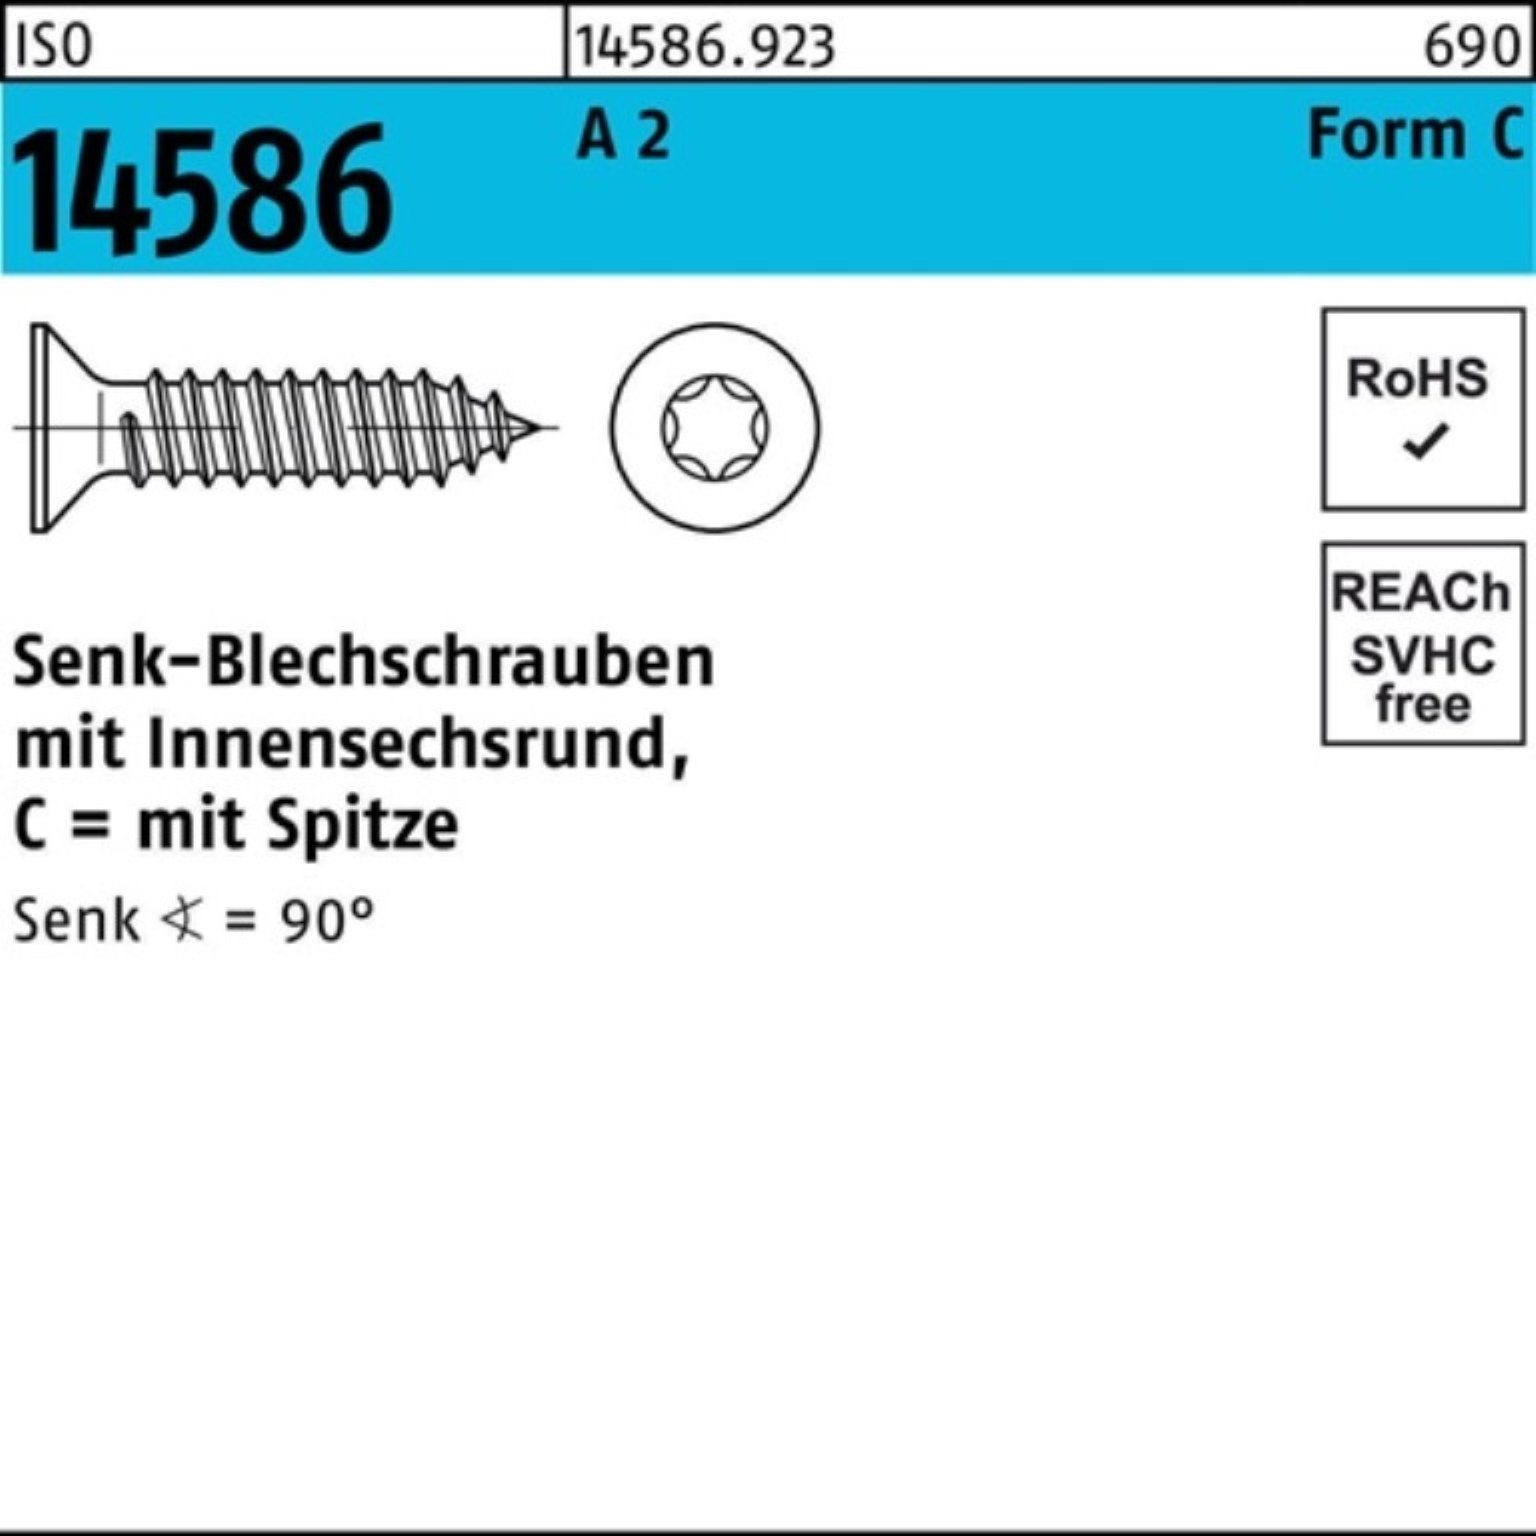 Reyher 250er Schraube ISO 5,5x Senkblechschraube 14586 ISR/Spitze 2 T25 2 -C Pack A 32